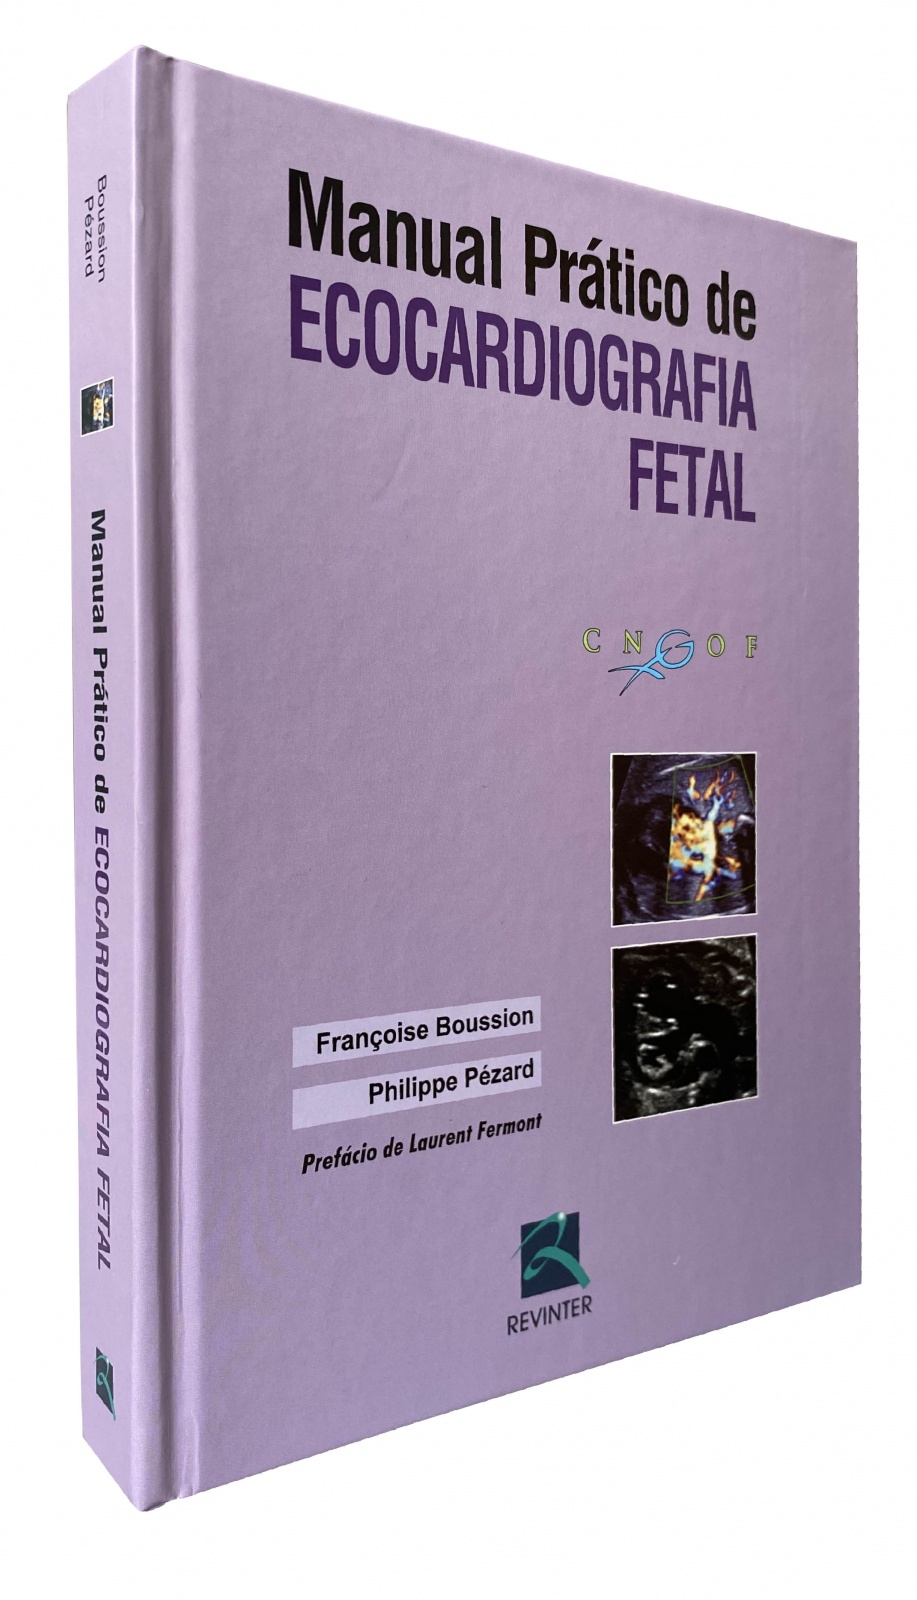 Manual Prático De Ecocardiografia Fetal